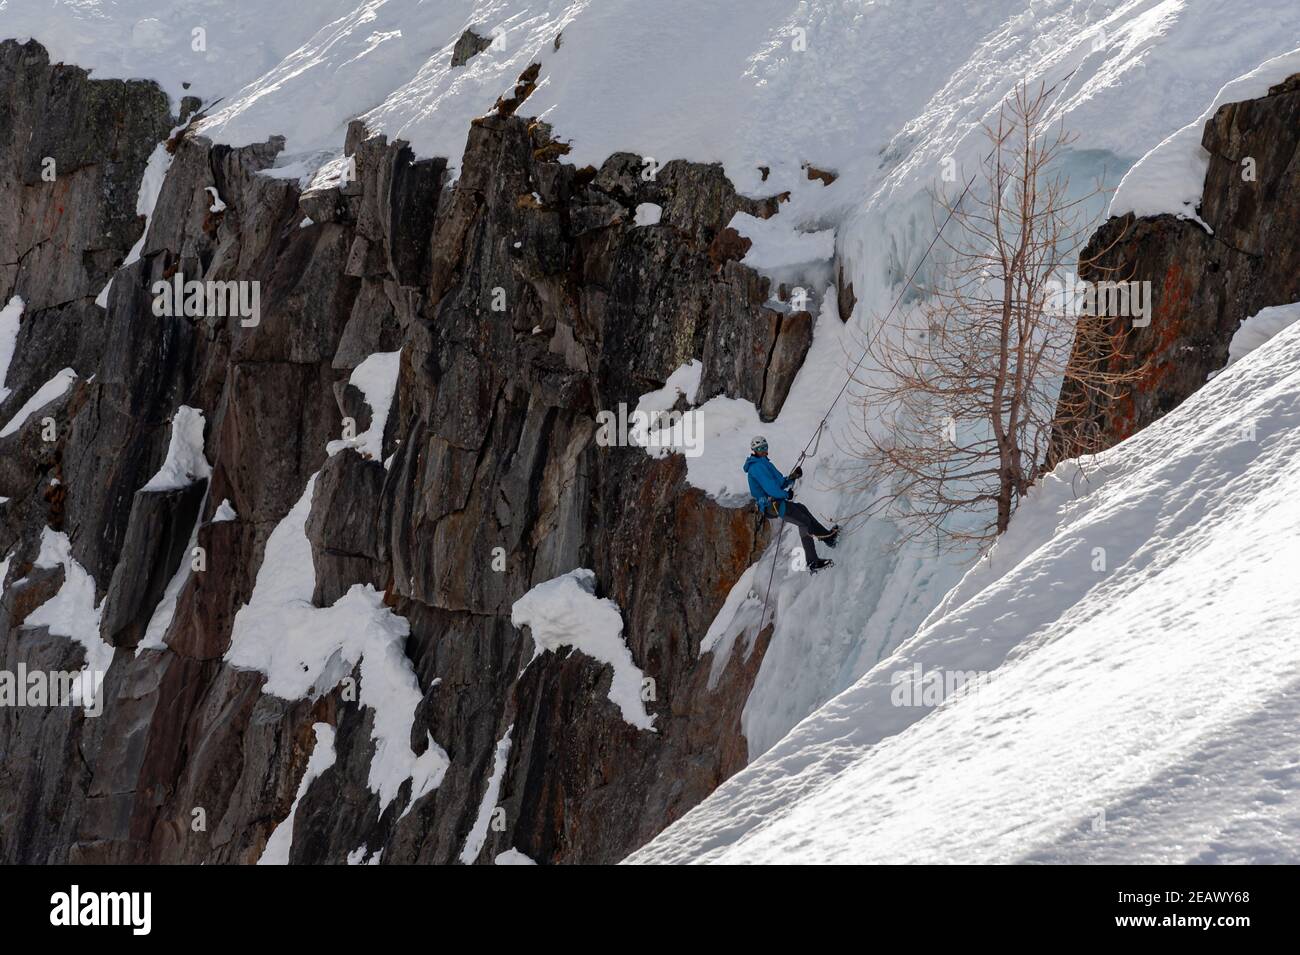 Argentiere, Frankreich - 13. März 2017: Ein Bergsteiger, der sich am sonnigen Wintertag auf den Grund des Eisfalls abseilt, um am Ende des Argentiere gla mit dem Eisklettern zu beginnen Stockfoto